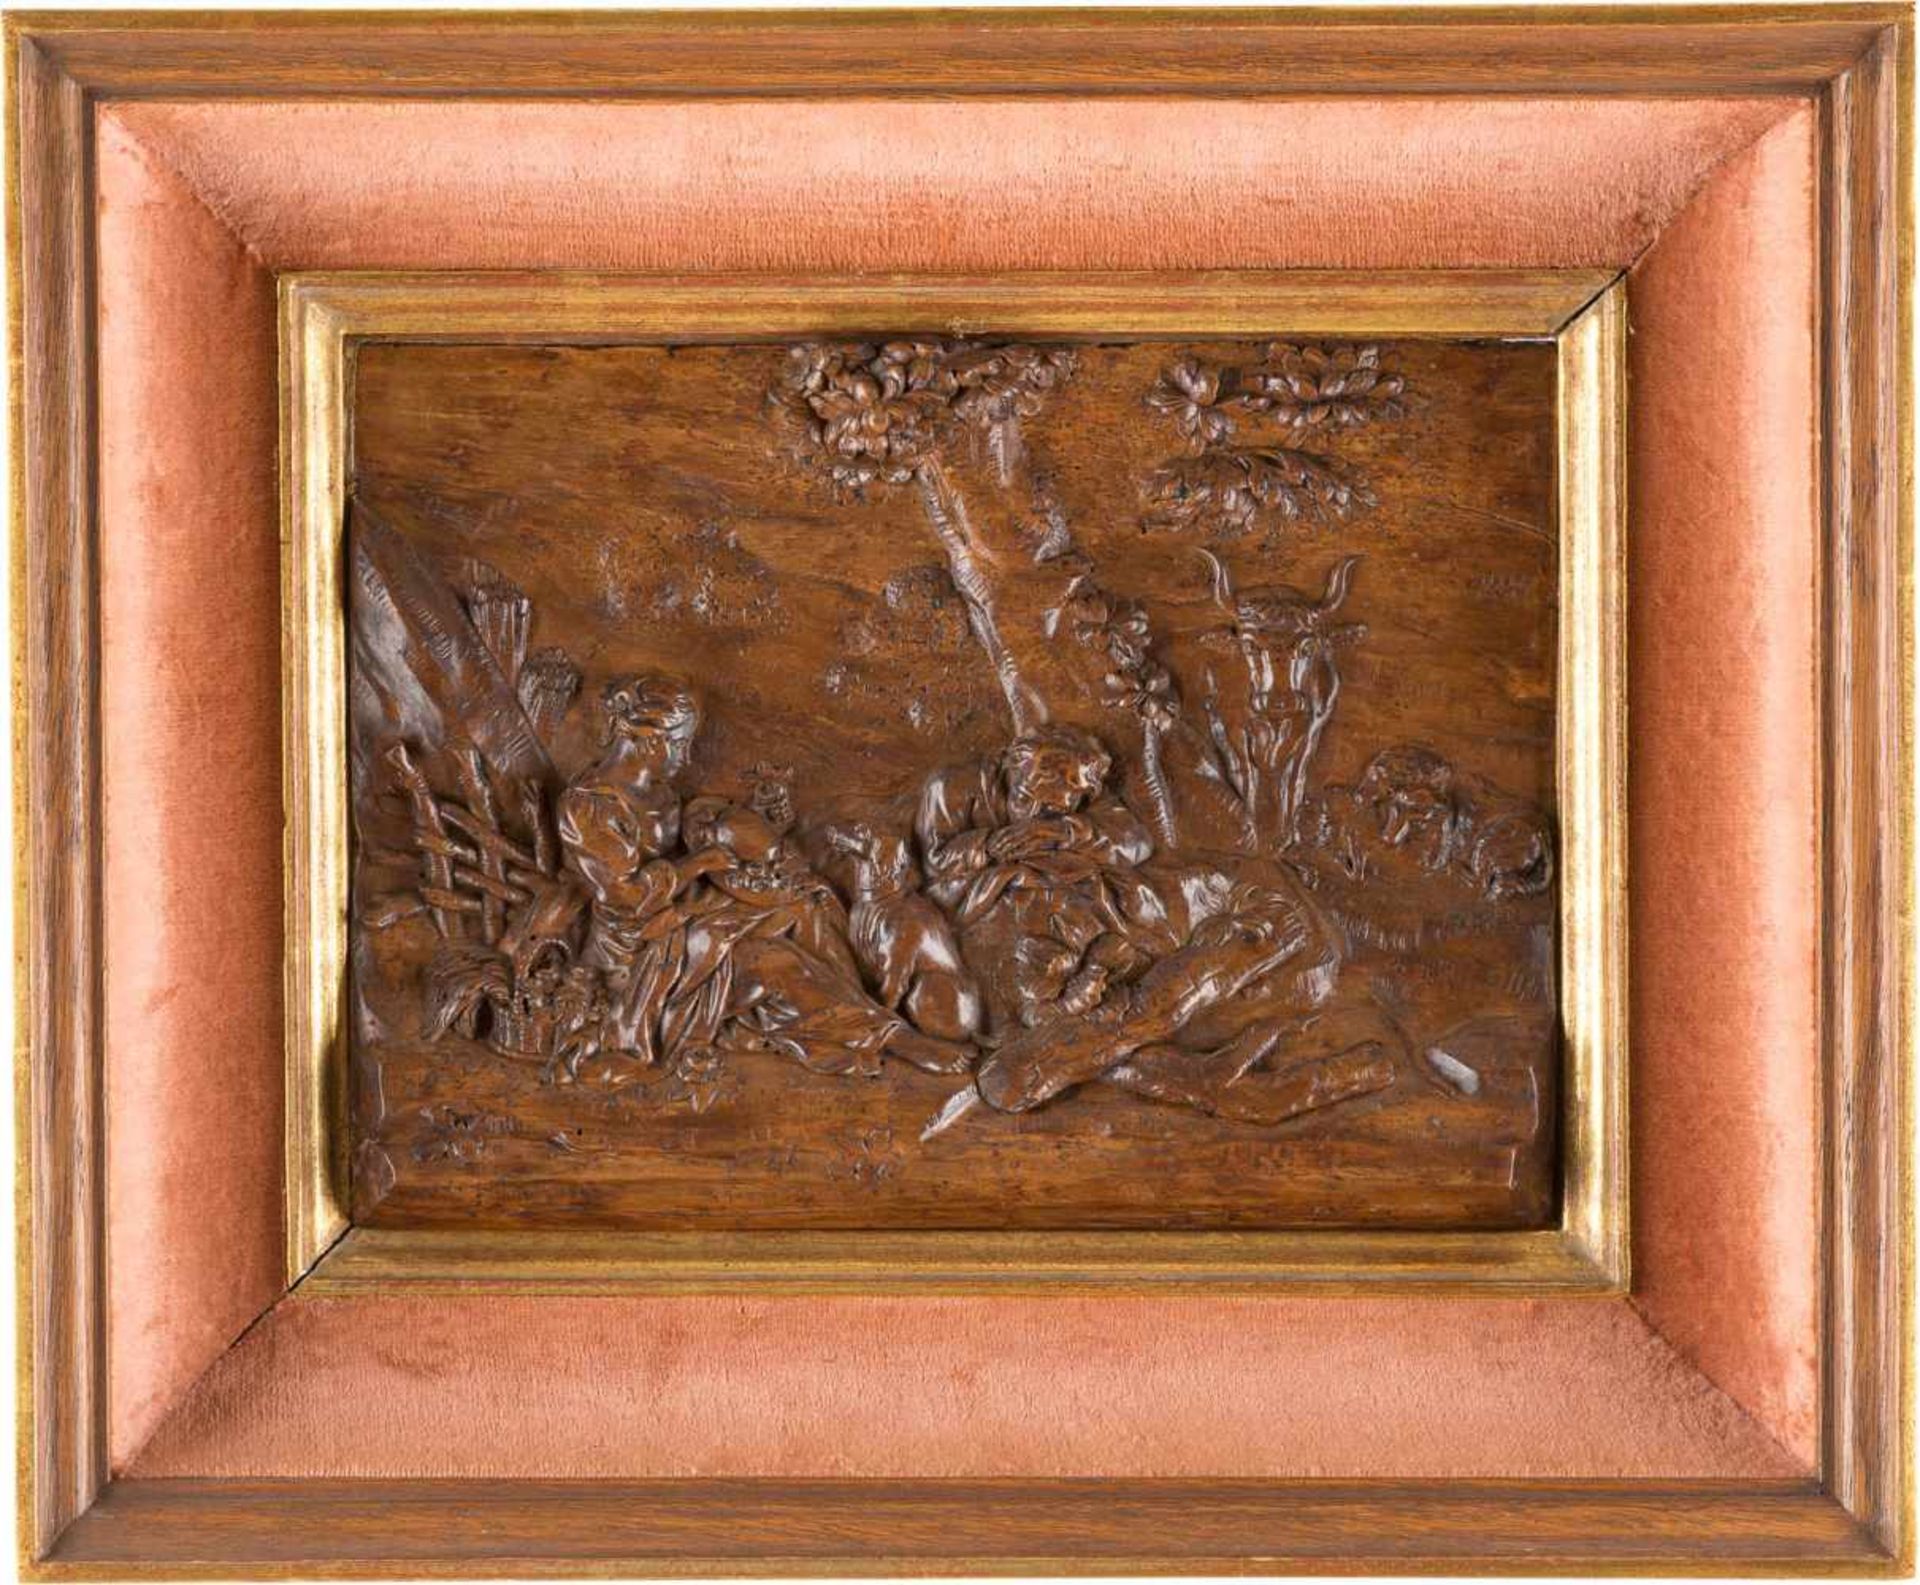 RELIEF MIT GALANTER SZENE Frankreich o. Flandern, um 1700 Holz, reliefplastisch geschnitzt, dunkel